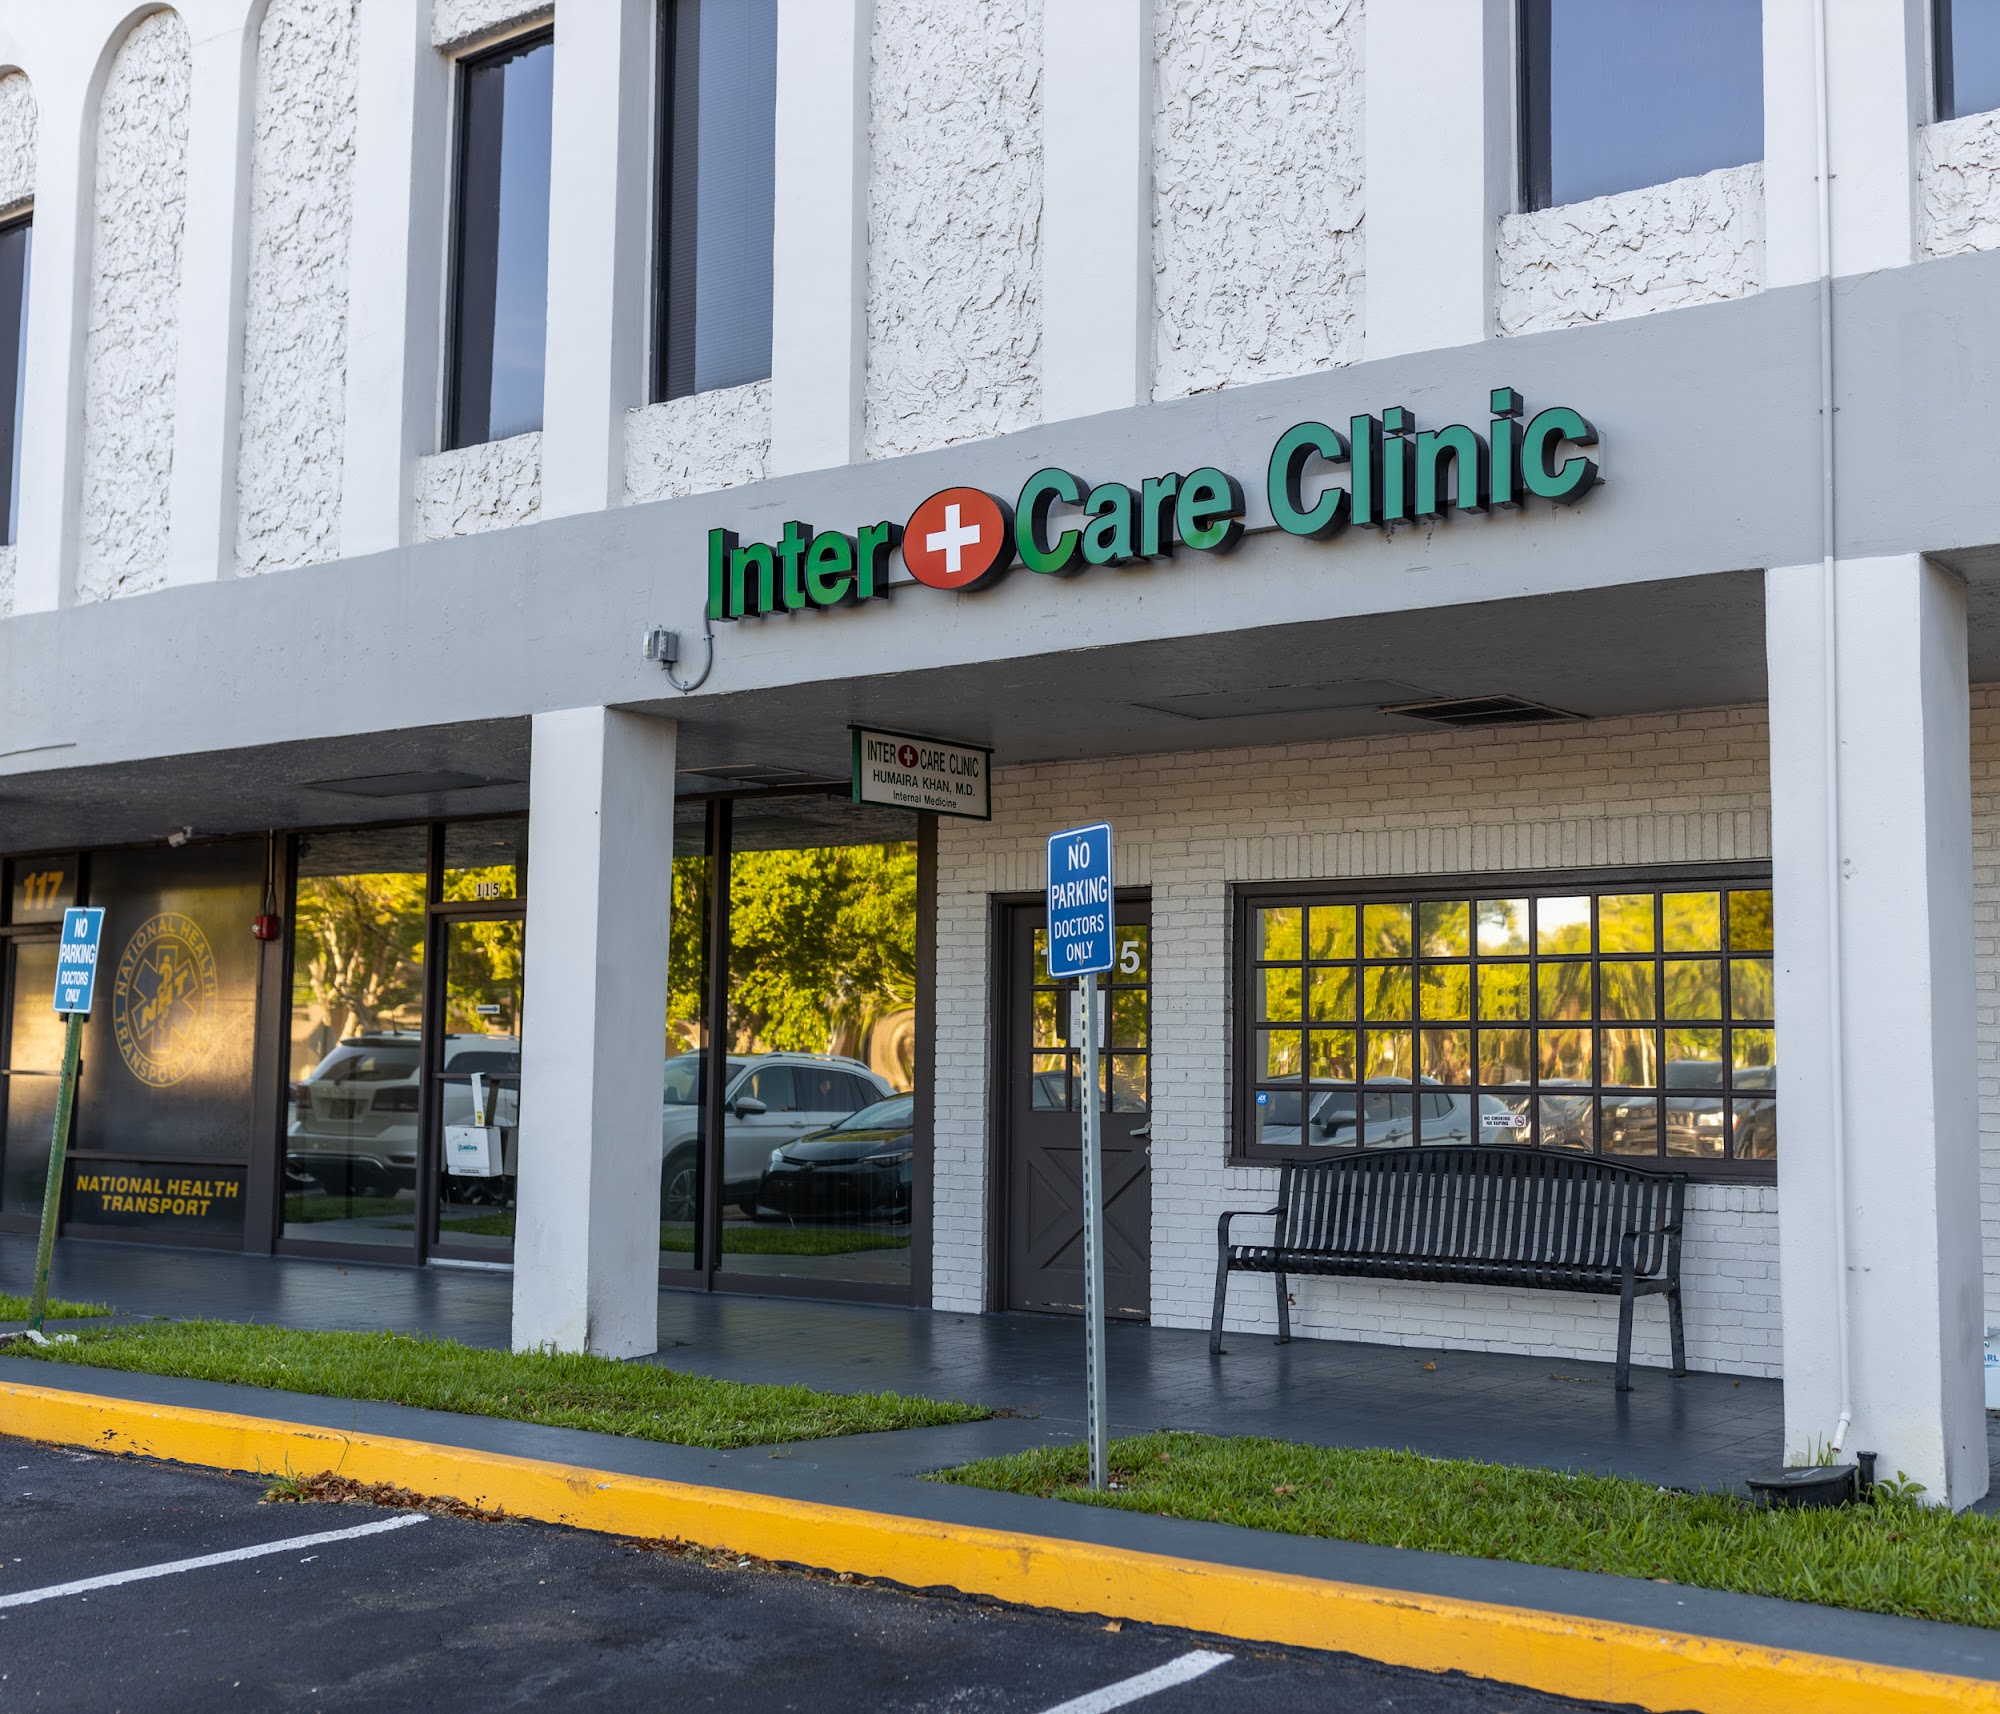 Intercare Clinic 4850 W Oakland Park Blvd Suite 115, Lauderdale Lakes Florida 33313